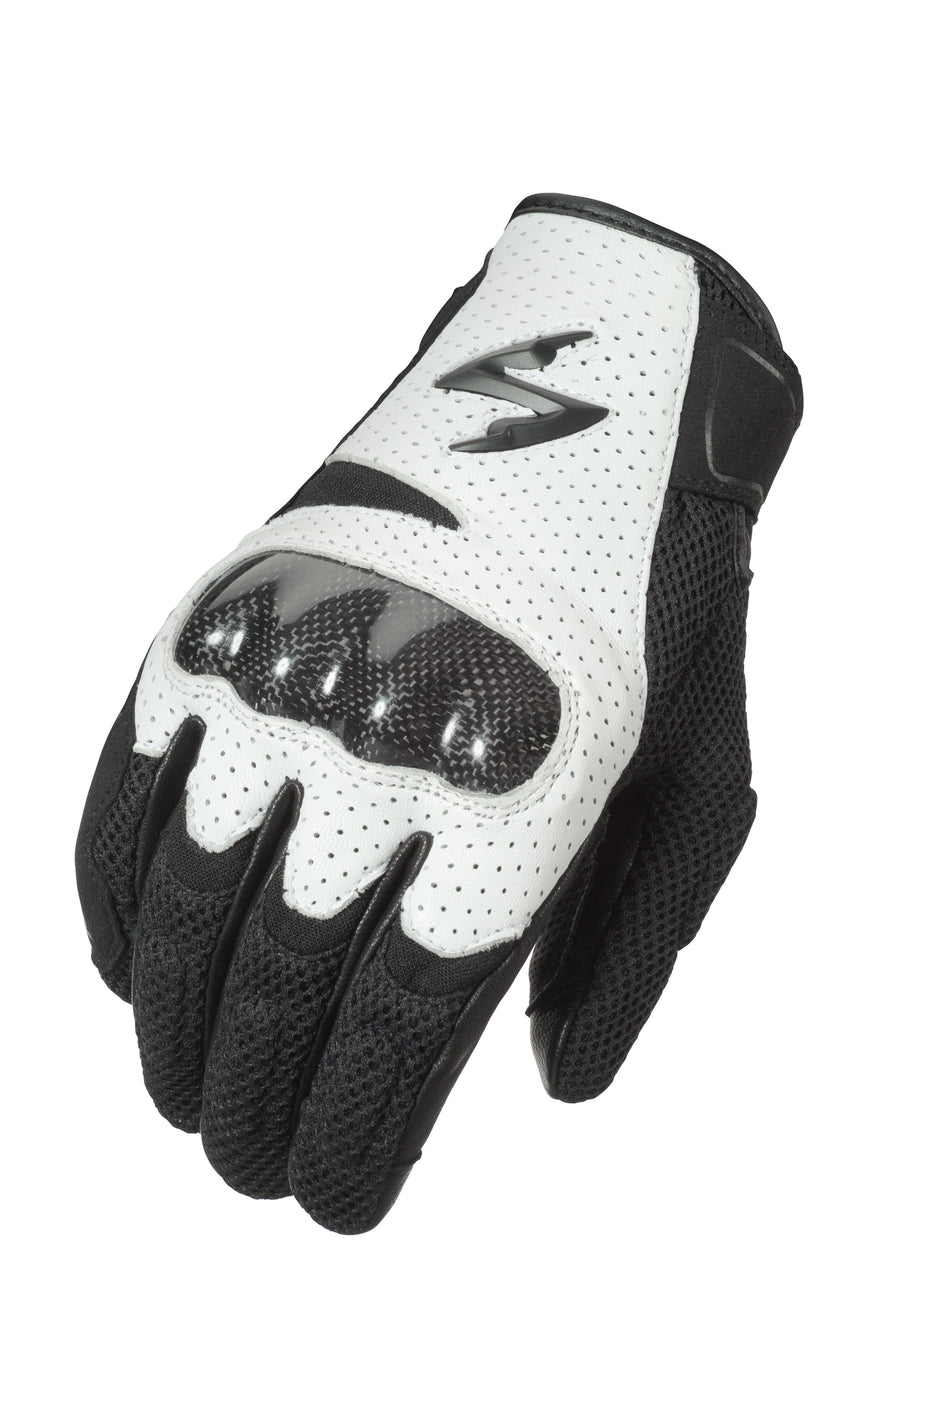 SCORPION EXO Vortex Air Gloves White Lg G36-055